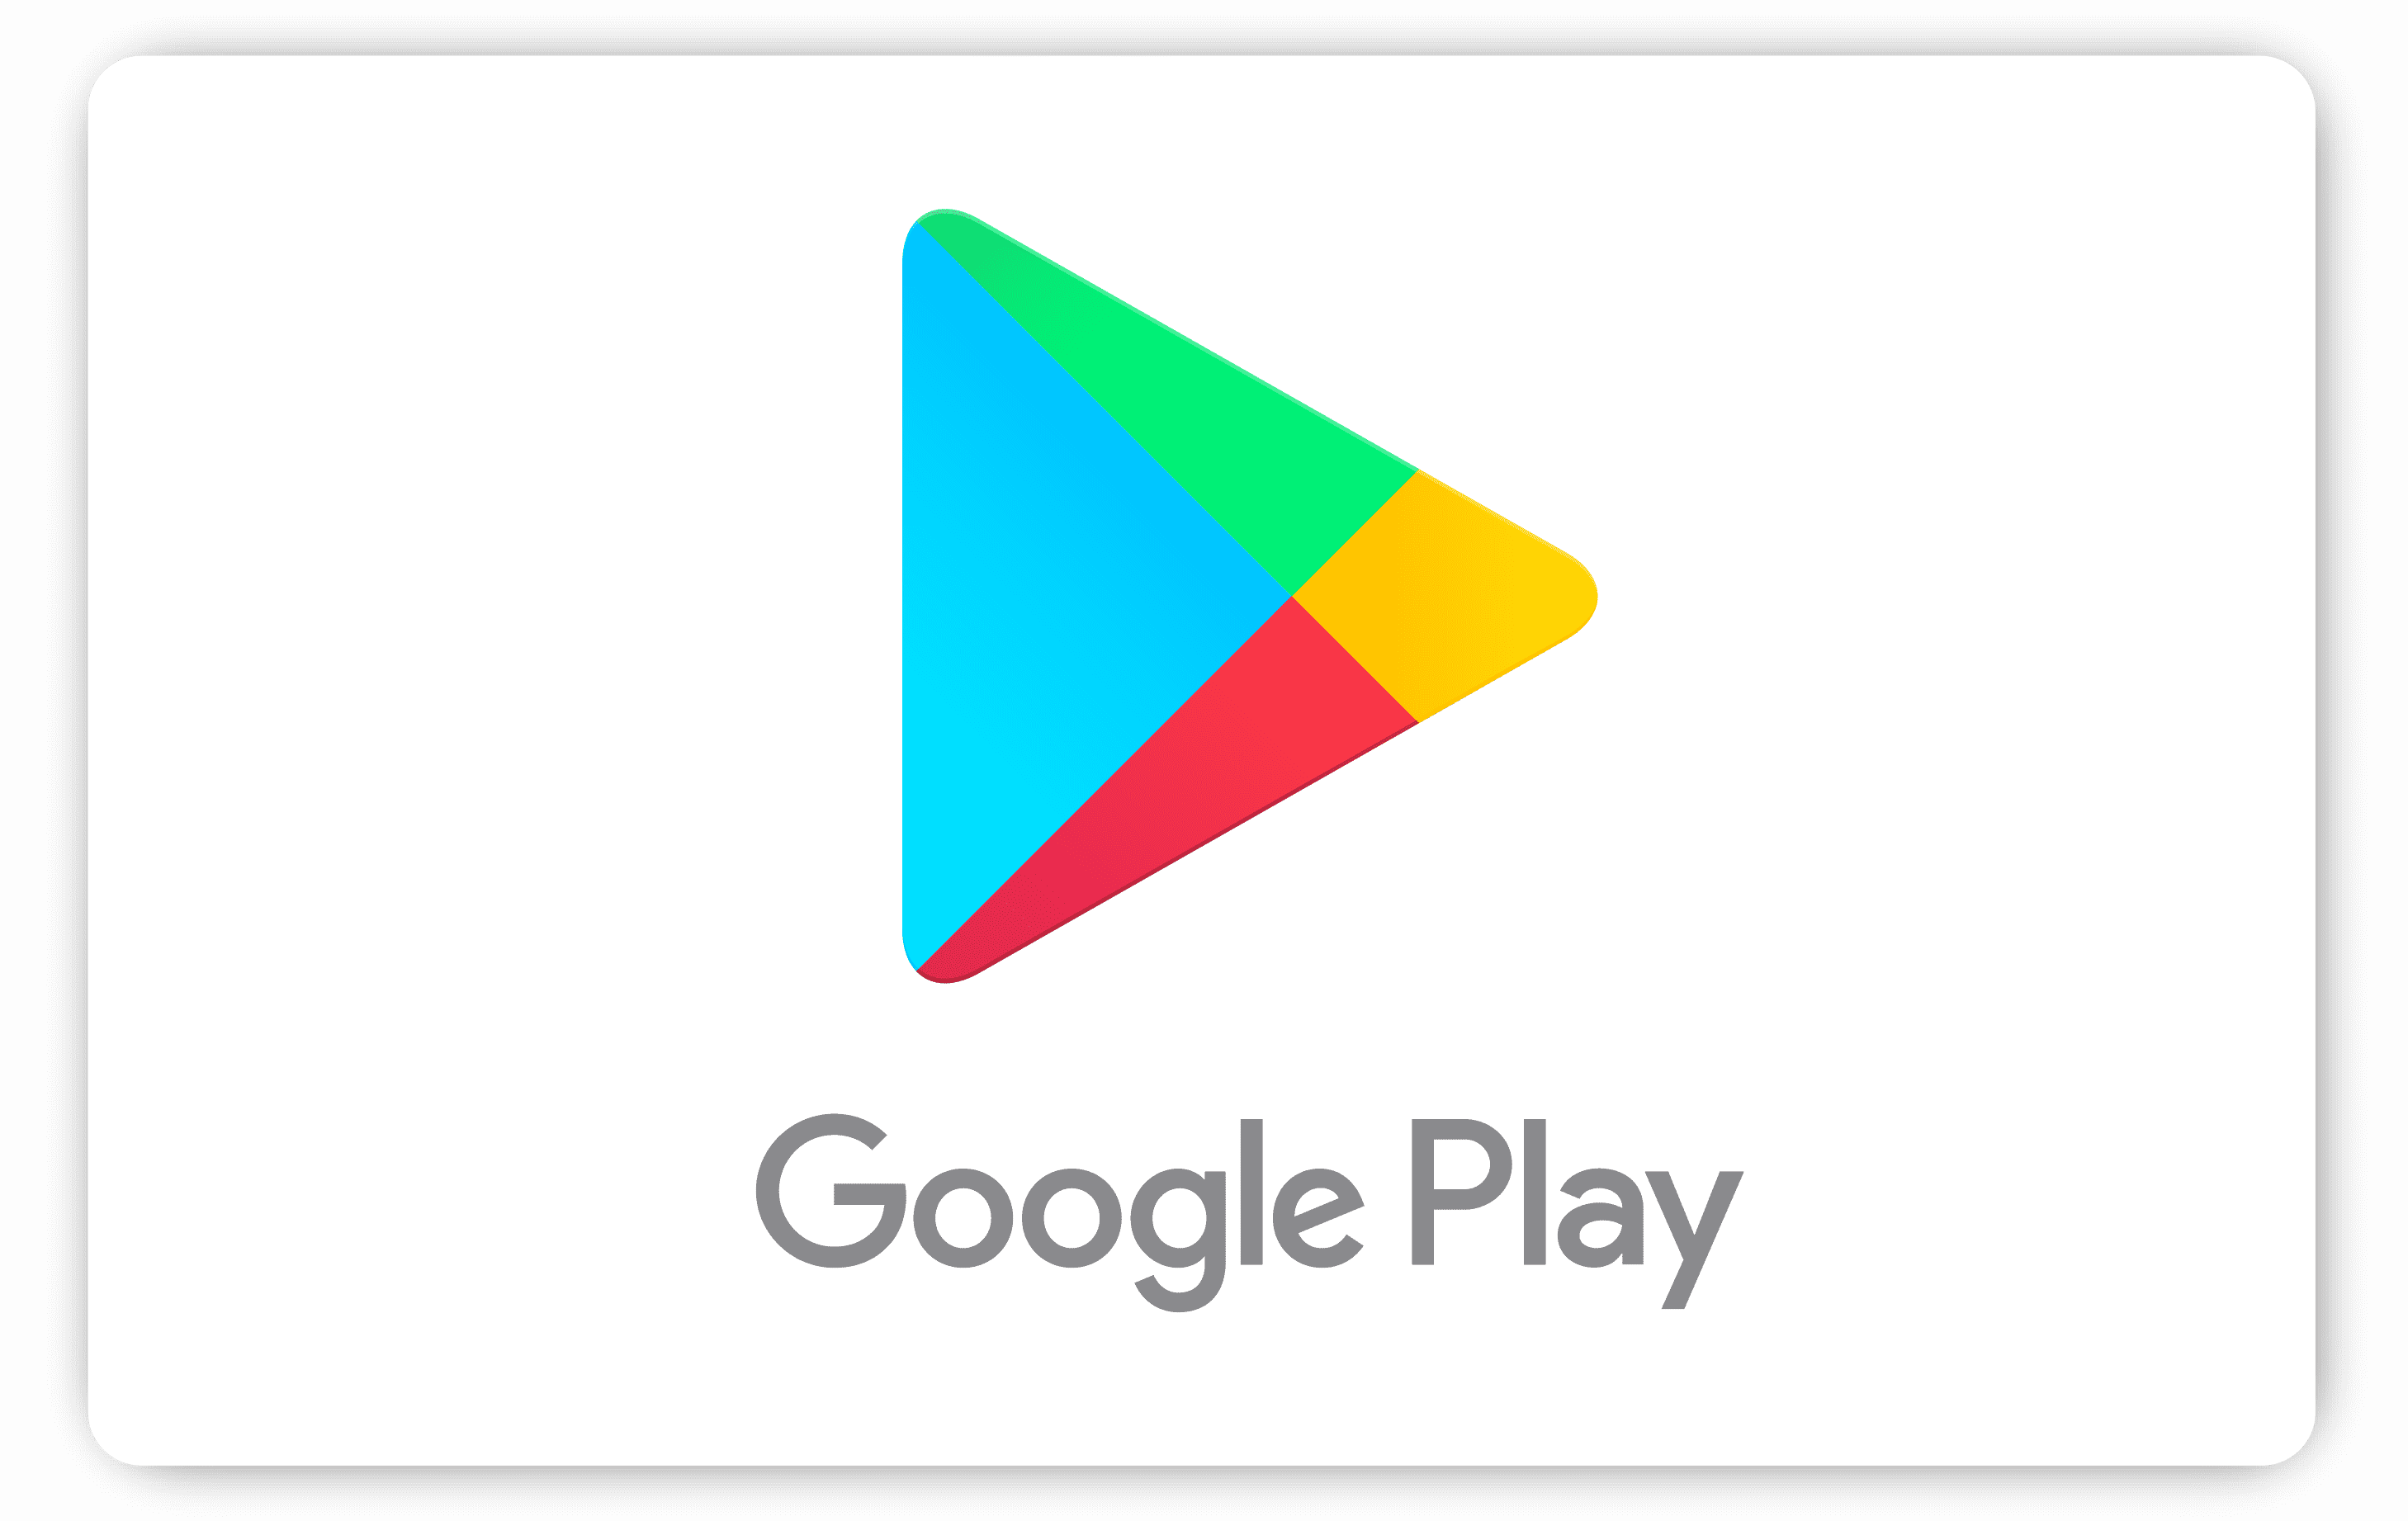 Google Play kodu 25 TL